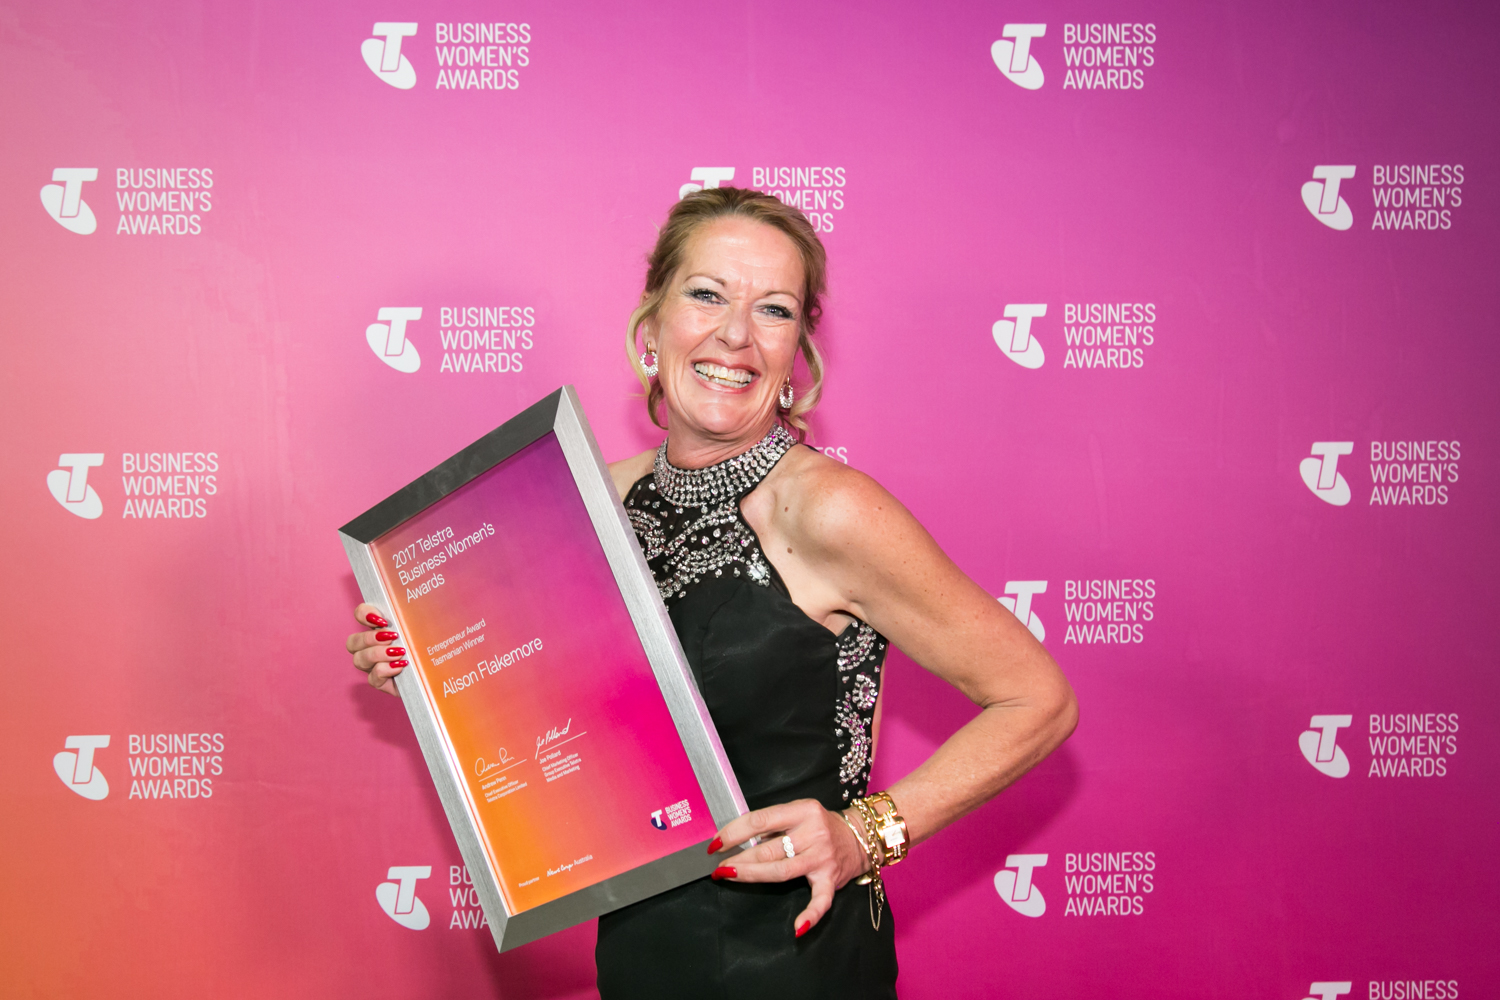 Telstra Business Women's Awards Entrepreneur Winner 2017